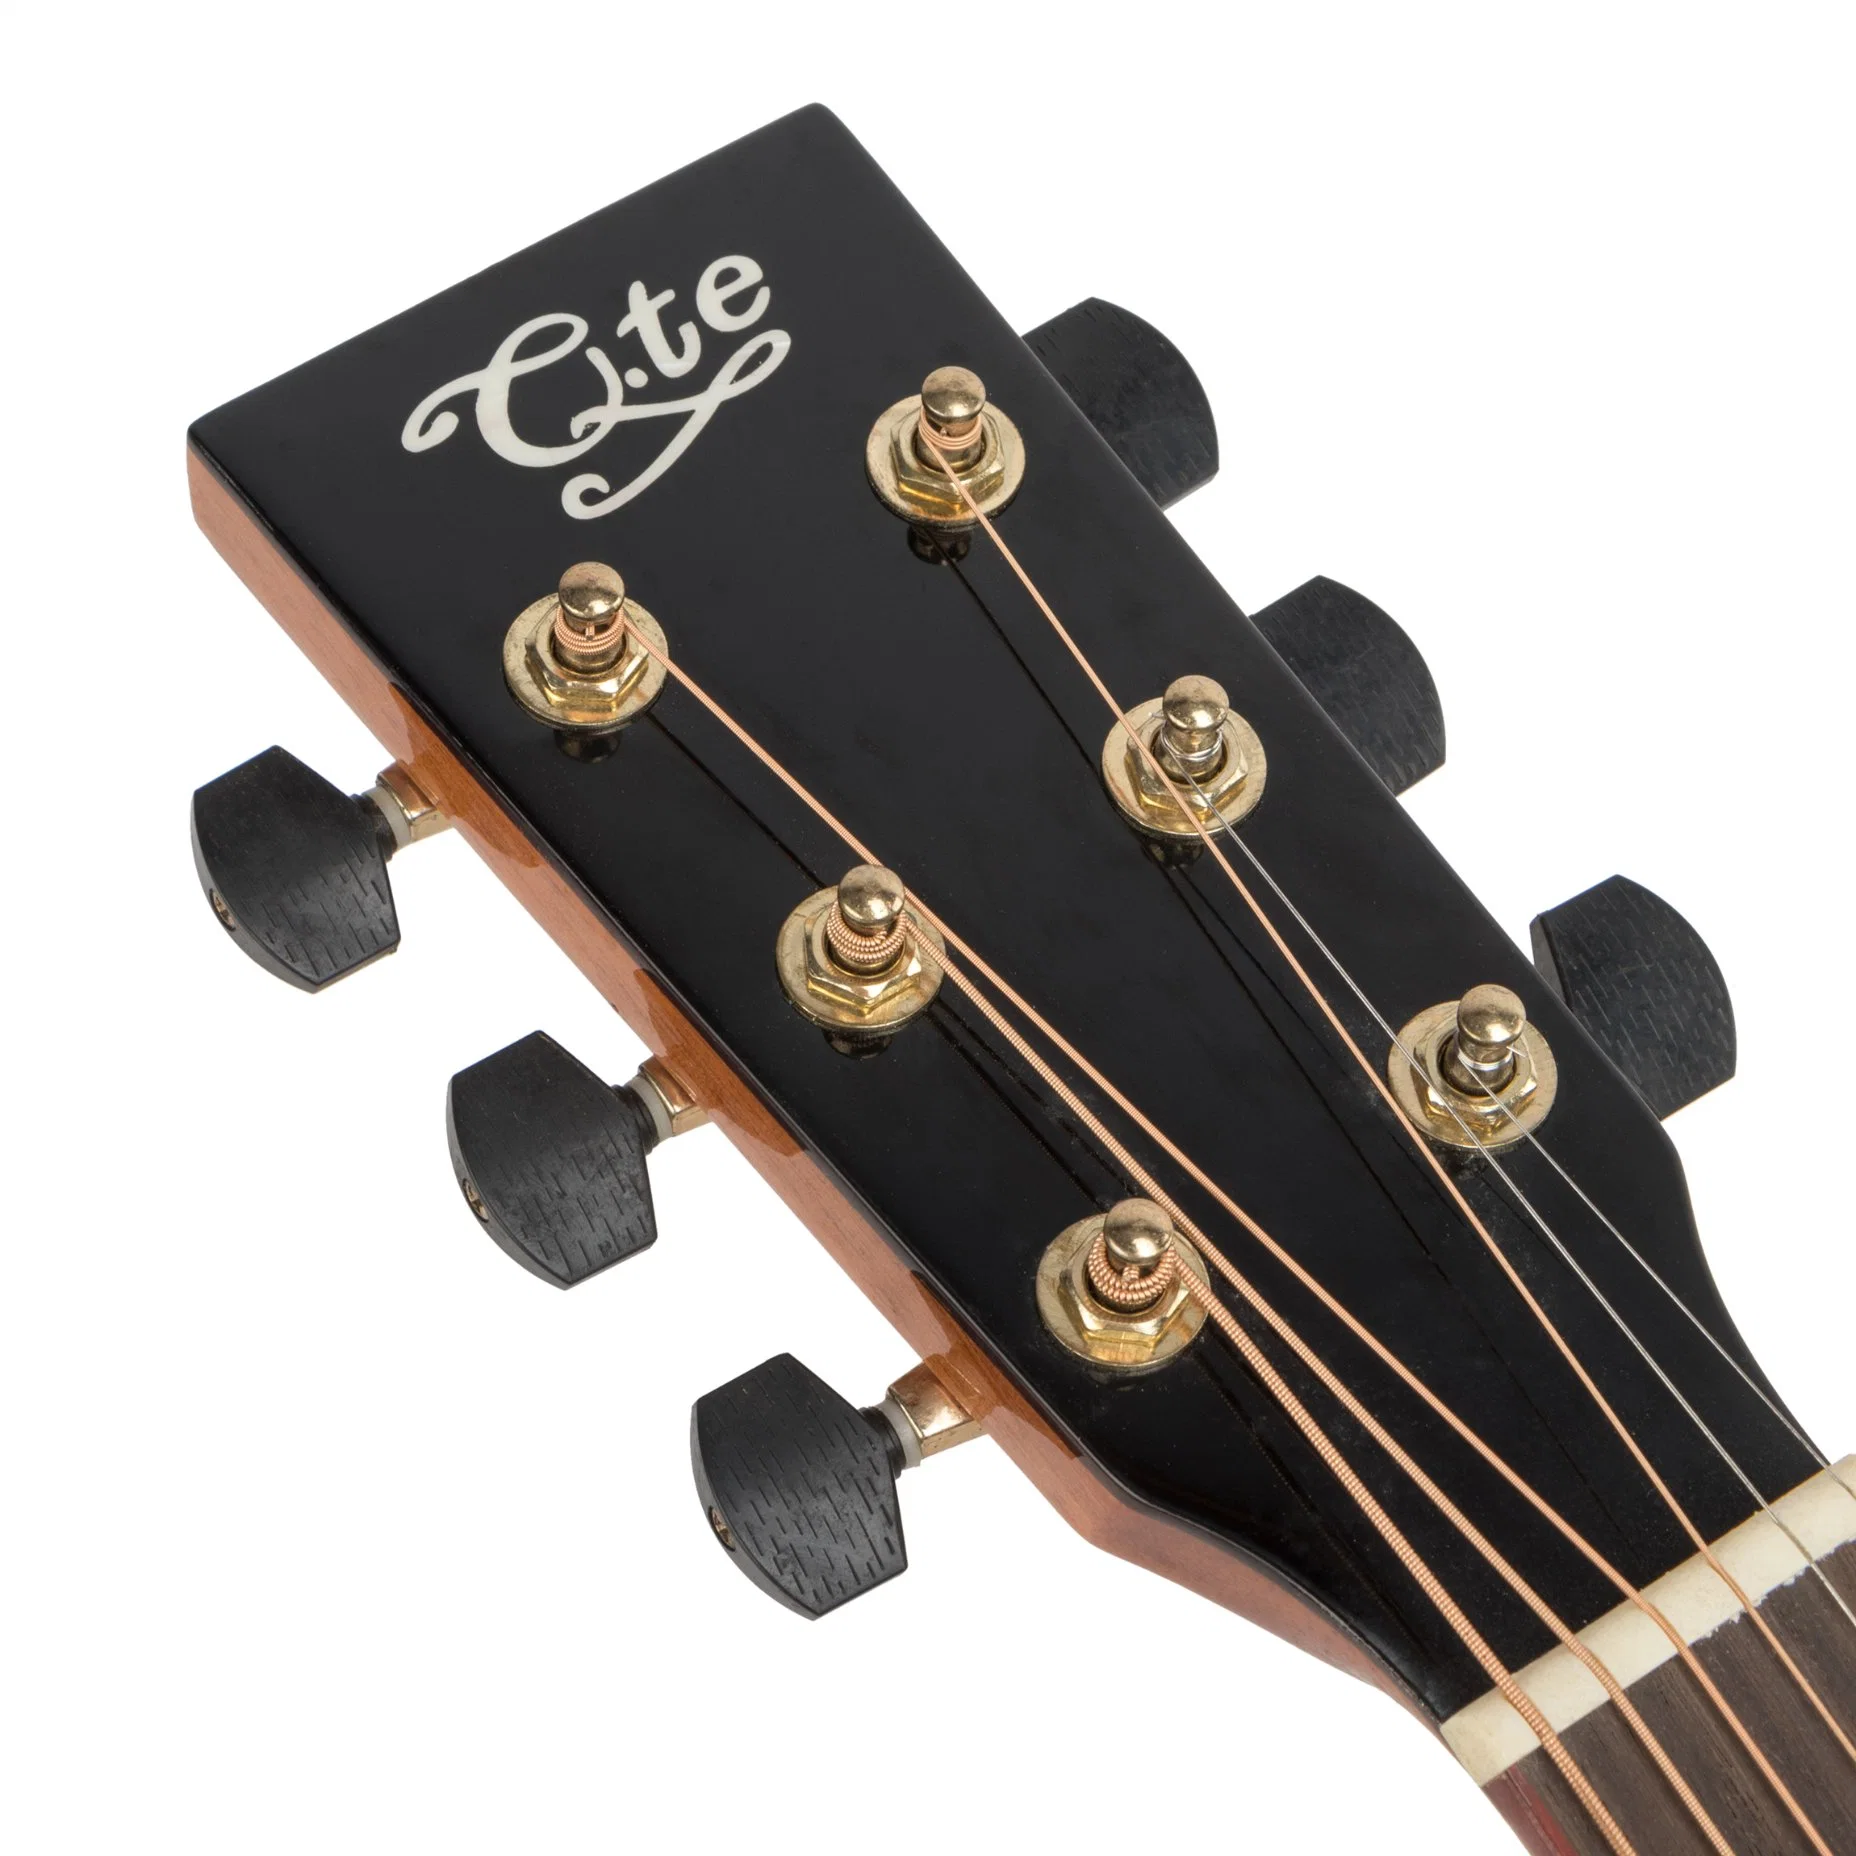 Premium Solid Spruce Top Professional Instruments Классическая гитара Acoustic